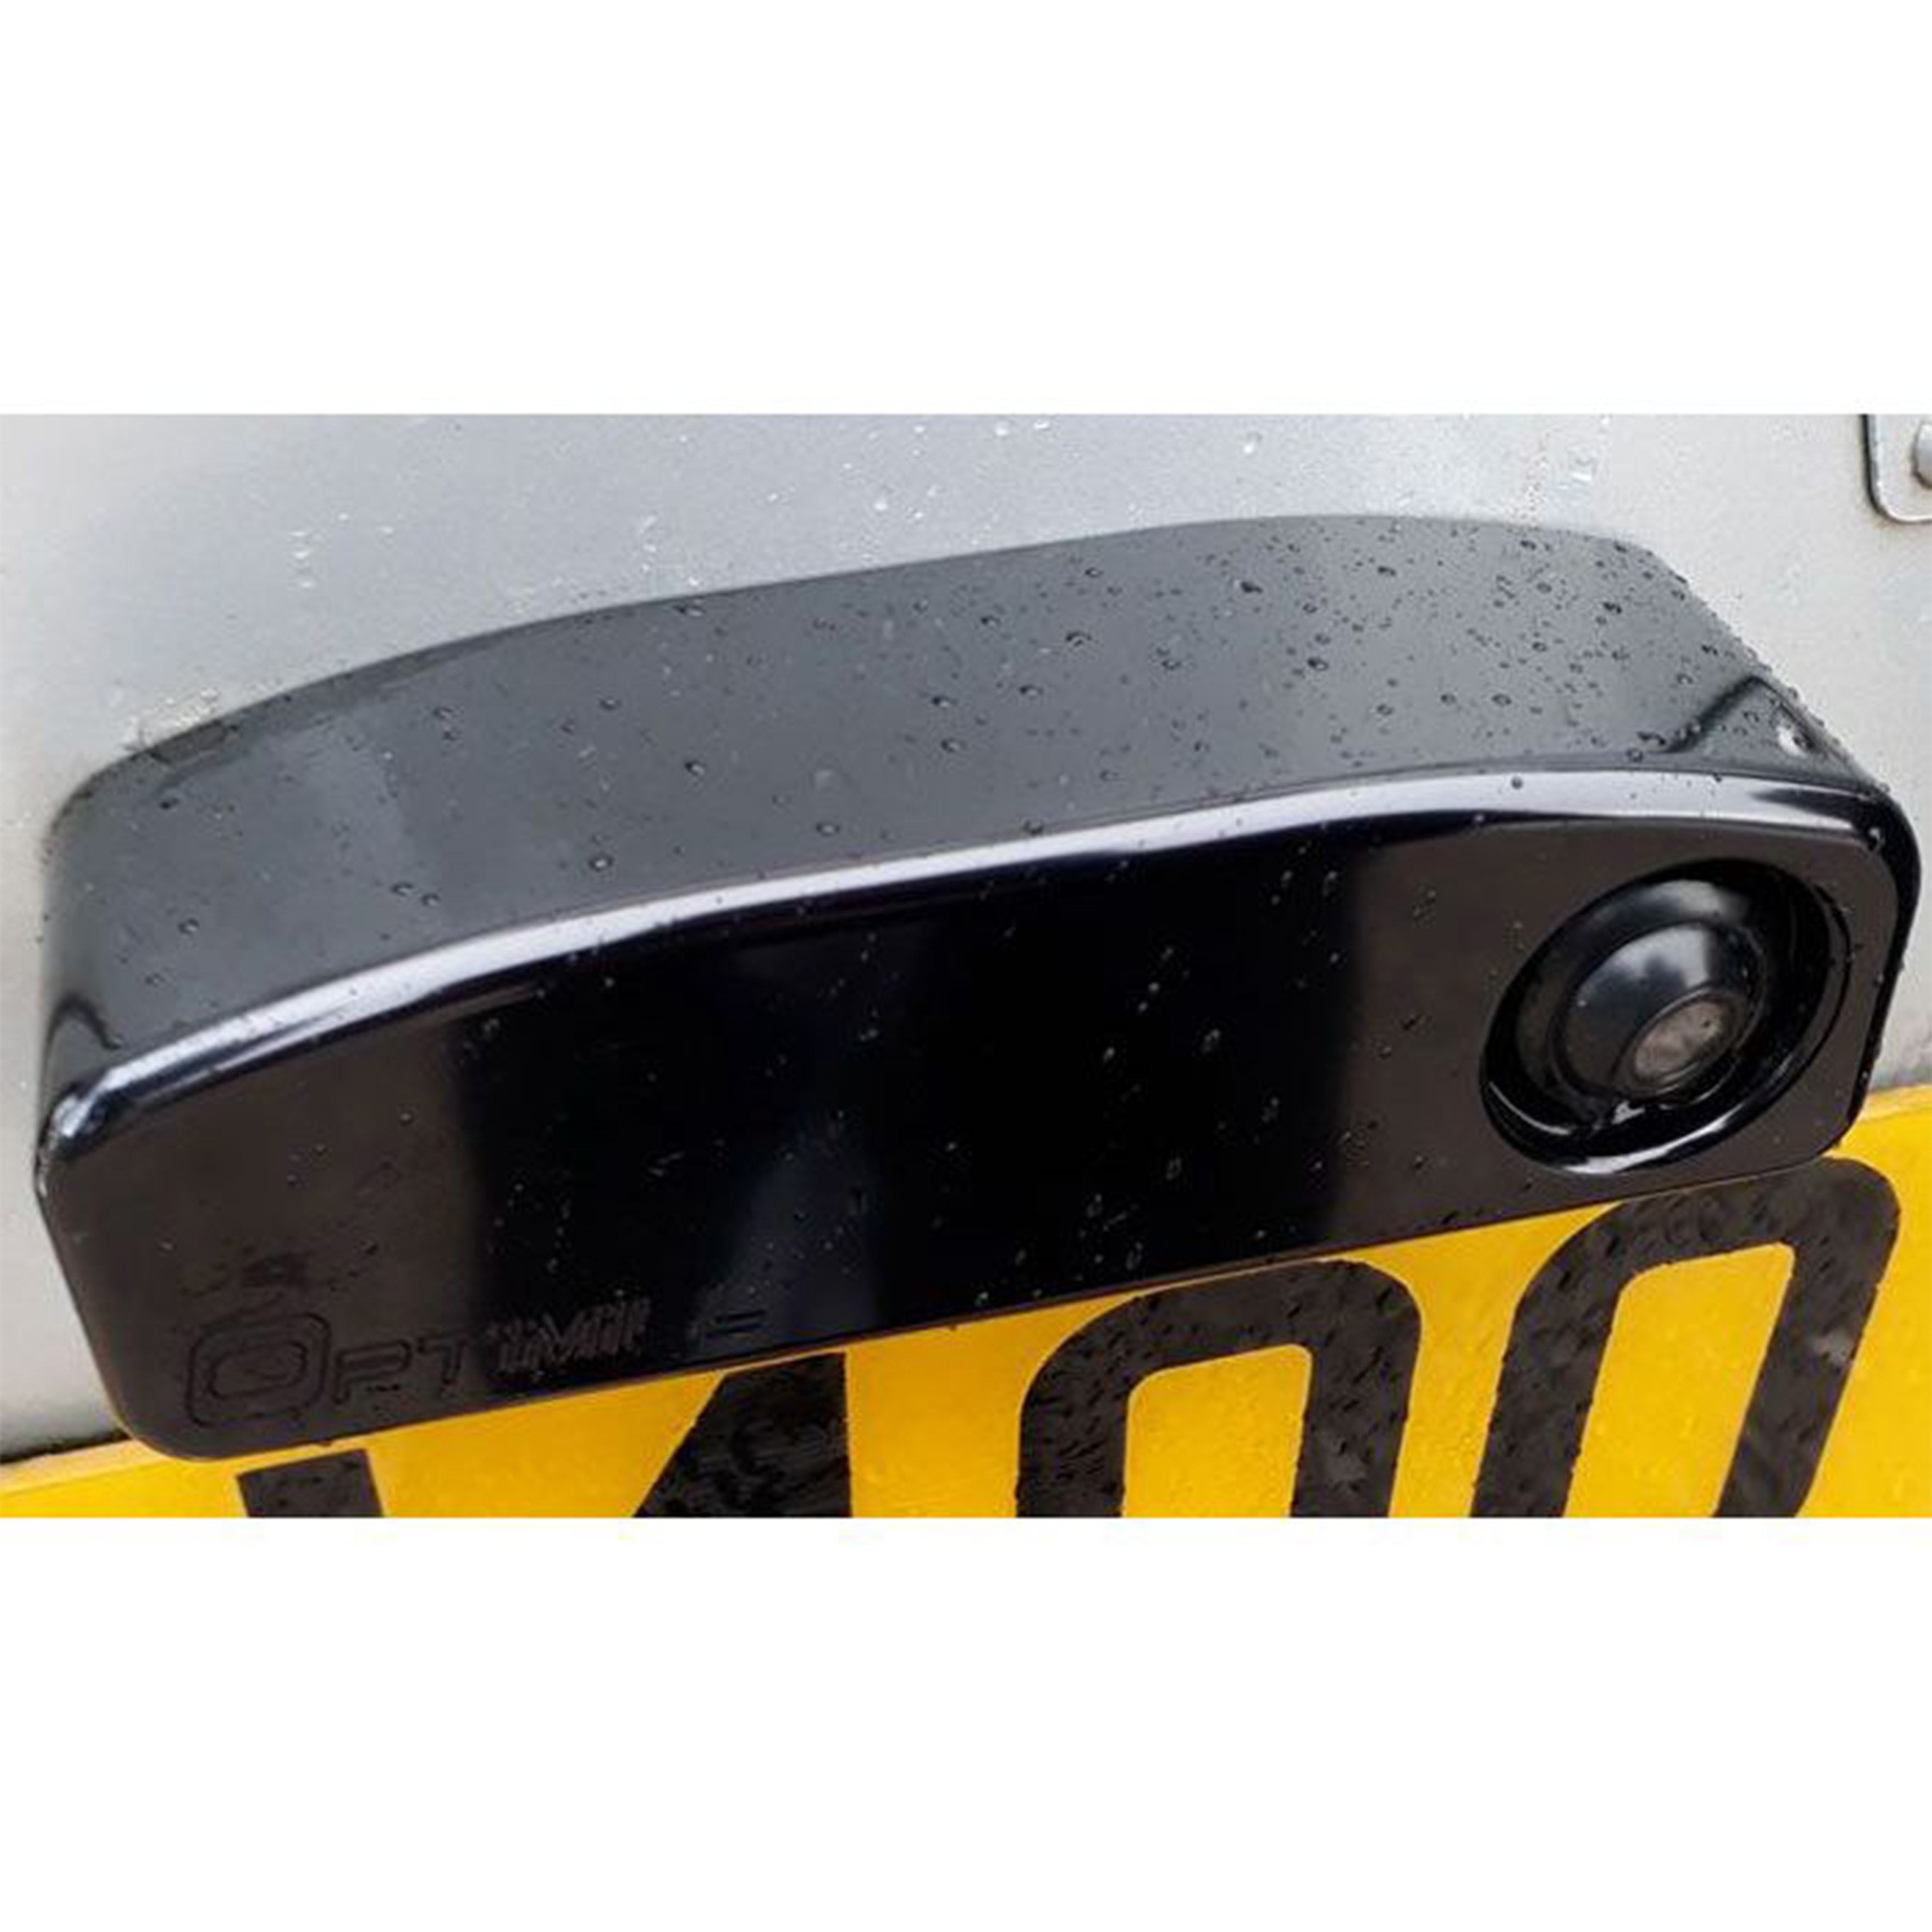 Optimill Defender Number Plate Light with Reversing Camera (Billet Aluminium) - Black